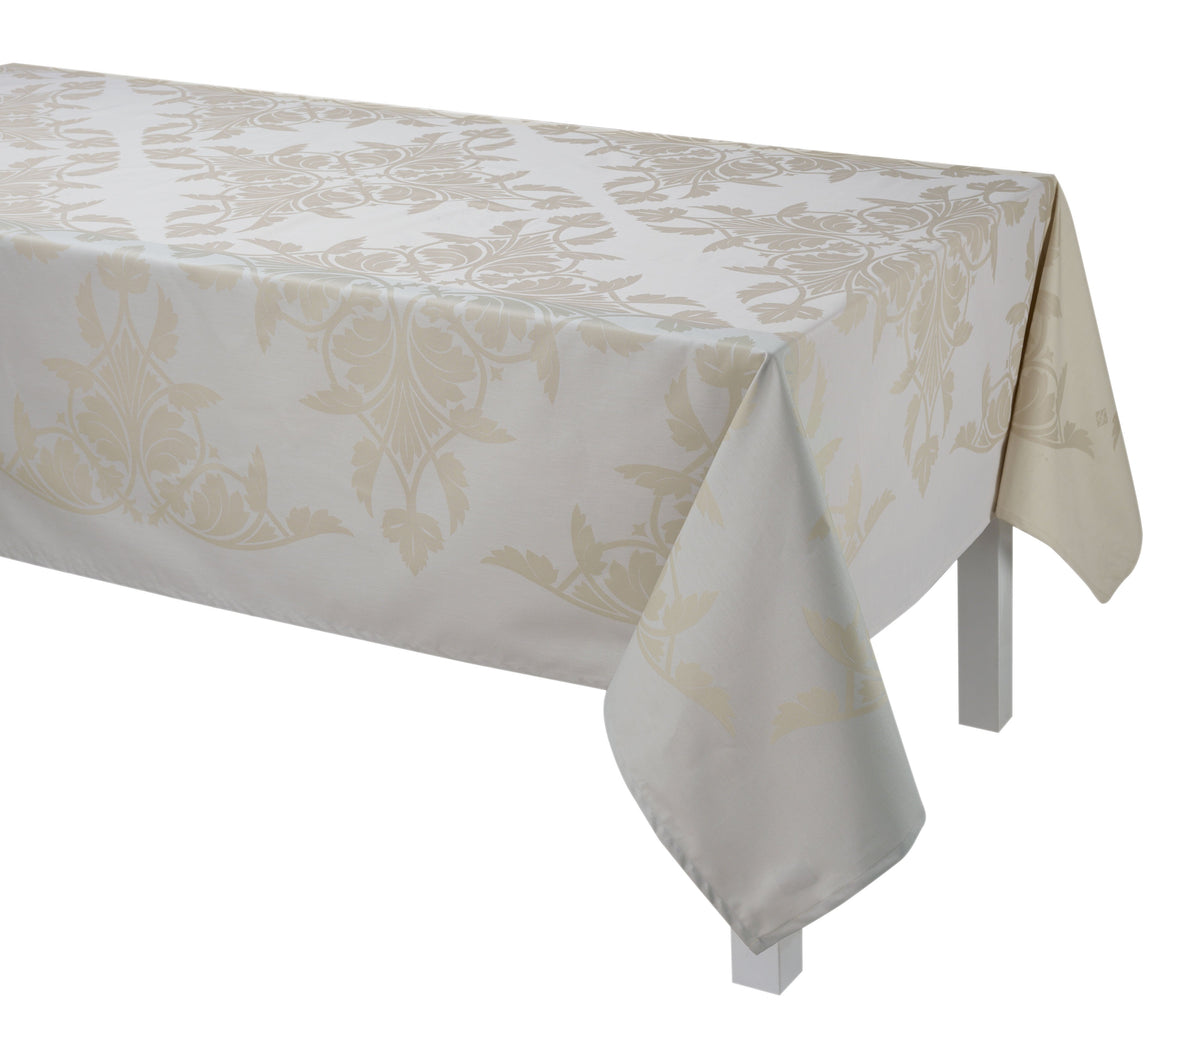 Le Jacquard Français Coated Table Linen Syracuse Enduit Fig Linens beige tablecloth